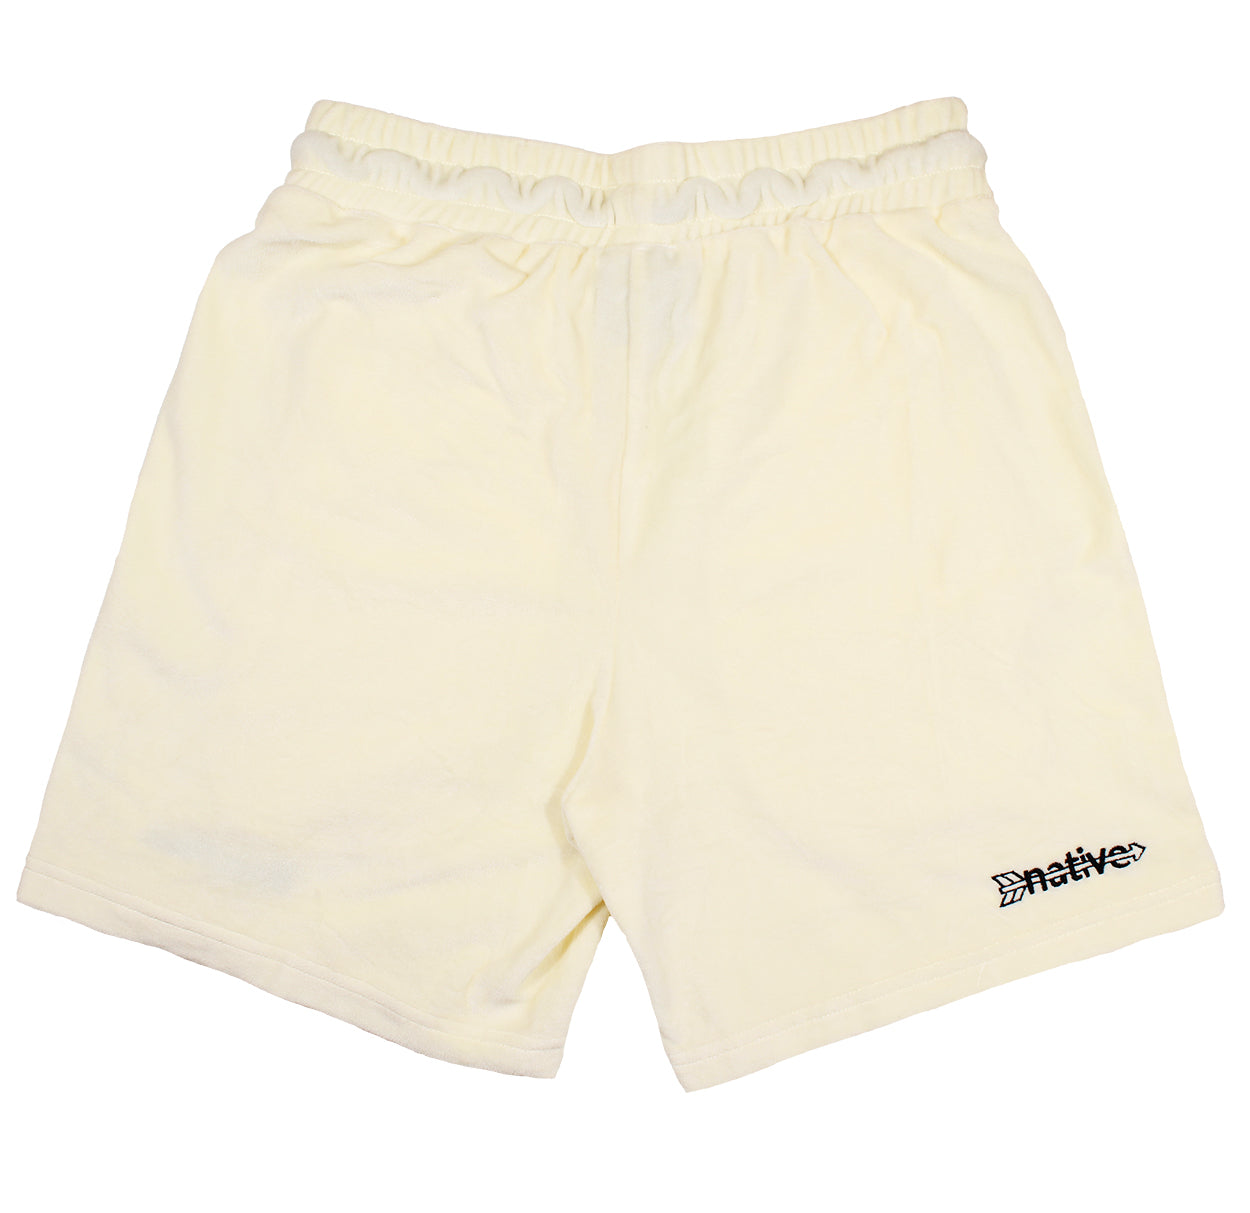 velour shorts in vanilla